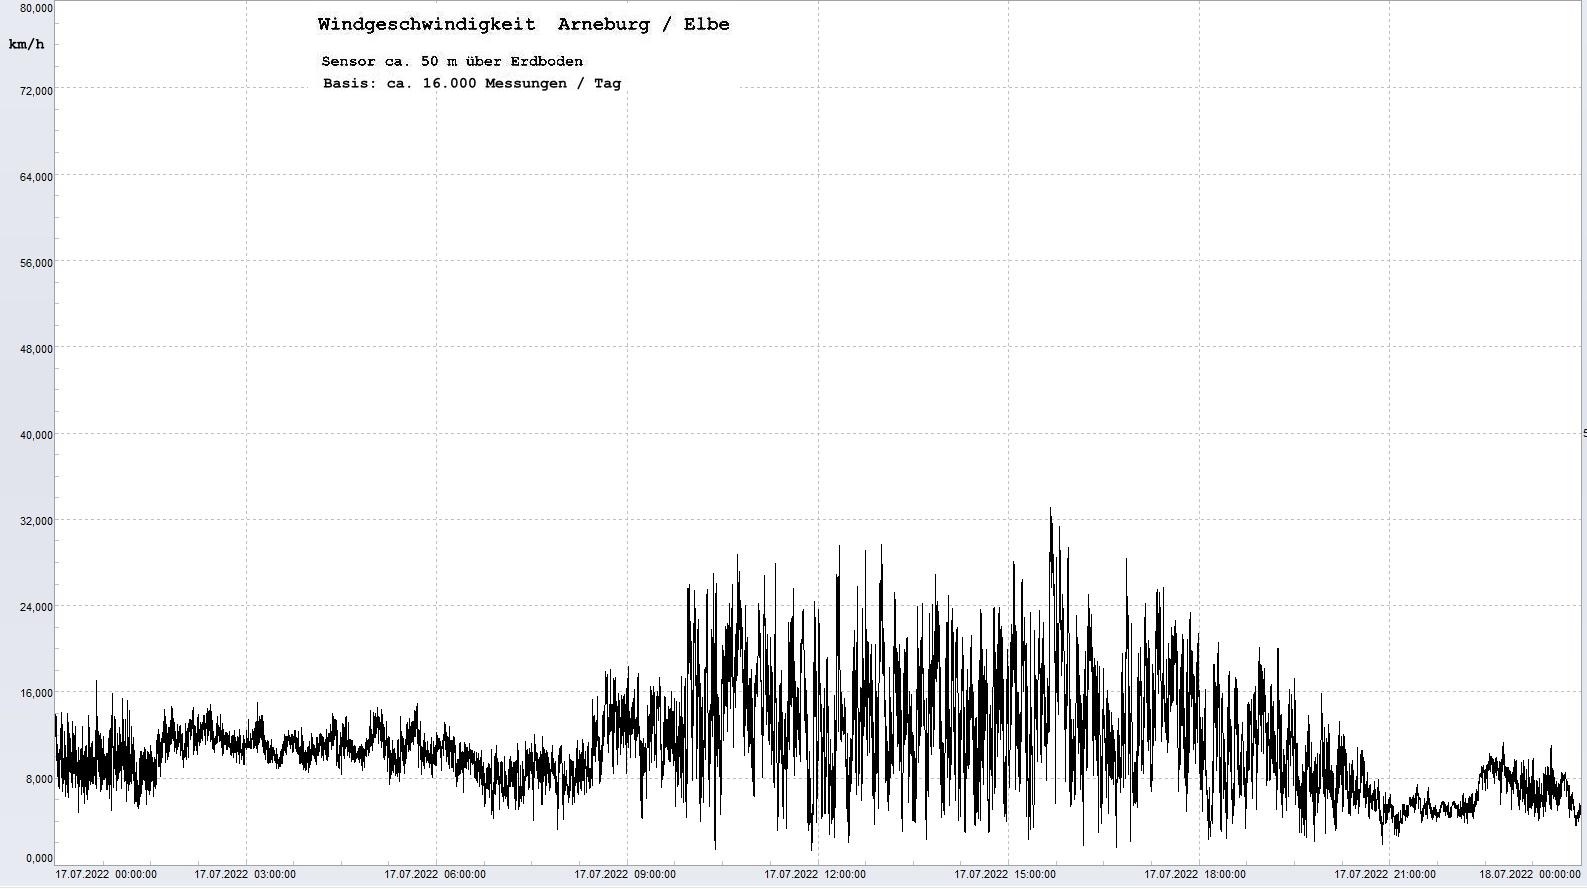 Arneburg Tages-Diagramm Winddaten, 17.07.2022
  Diagramm, Sensor auf Gebäude, ca. 50 m über Erdboden, Basis: 5s-Aufzeichnung